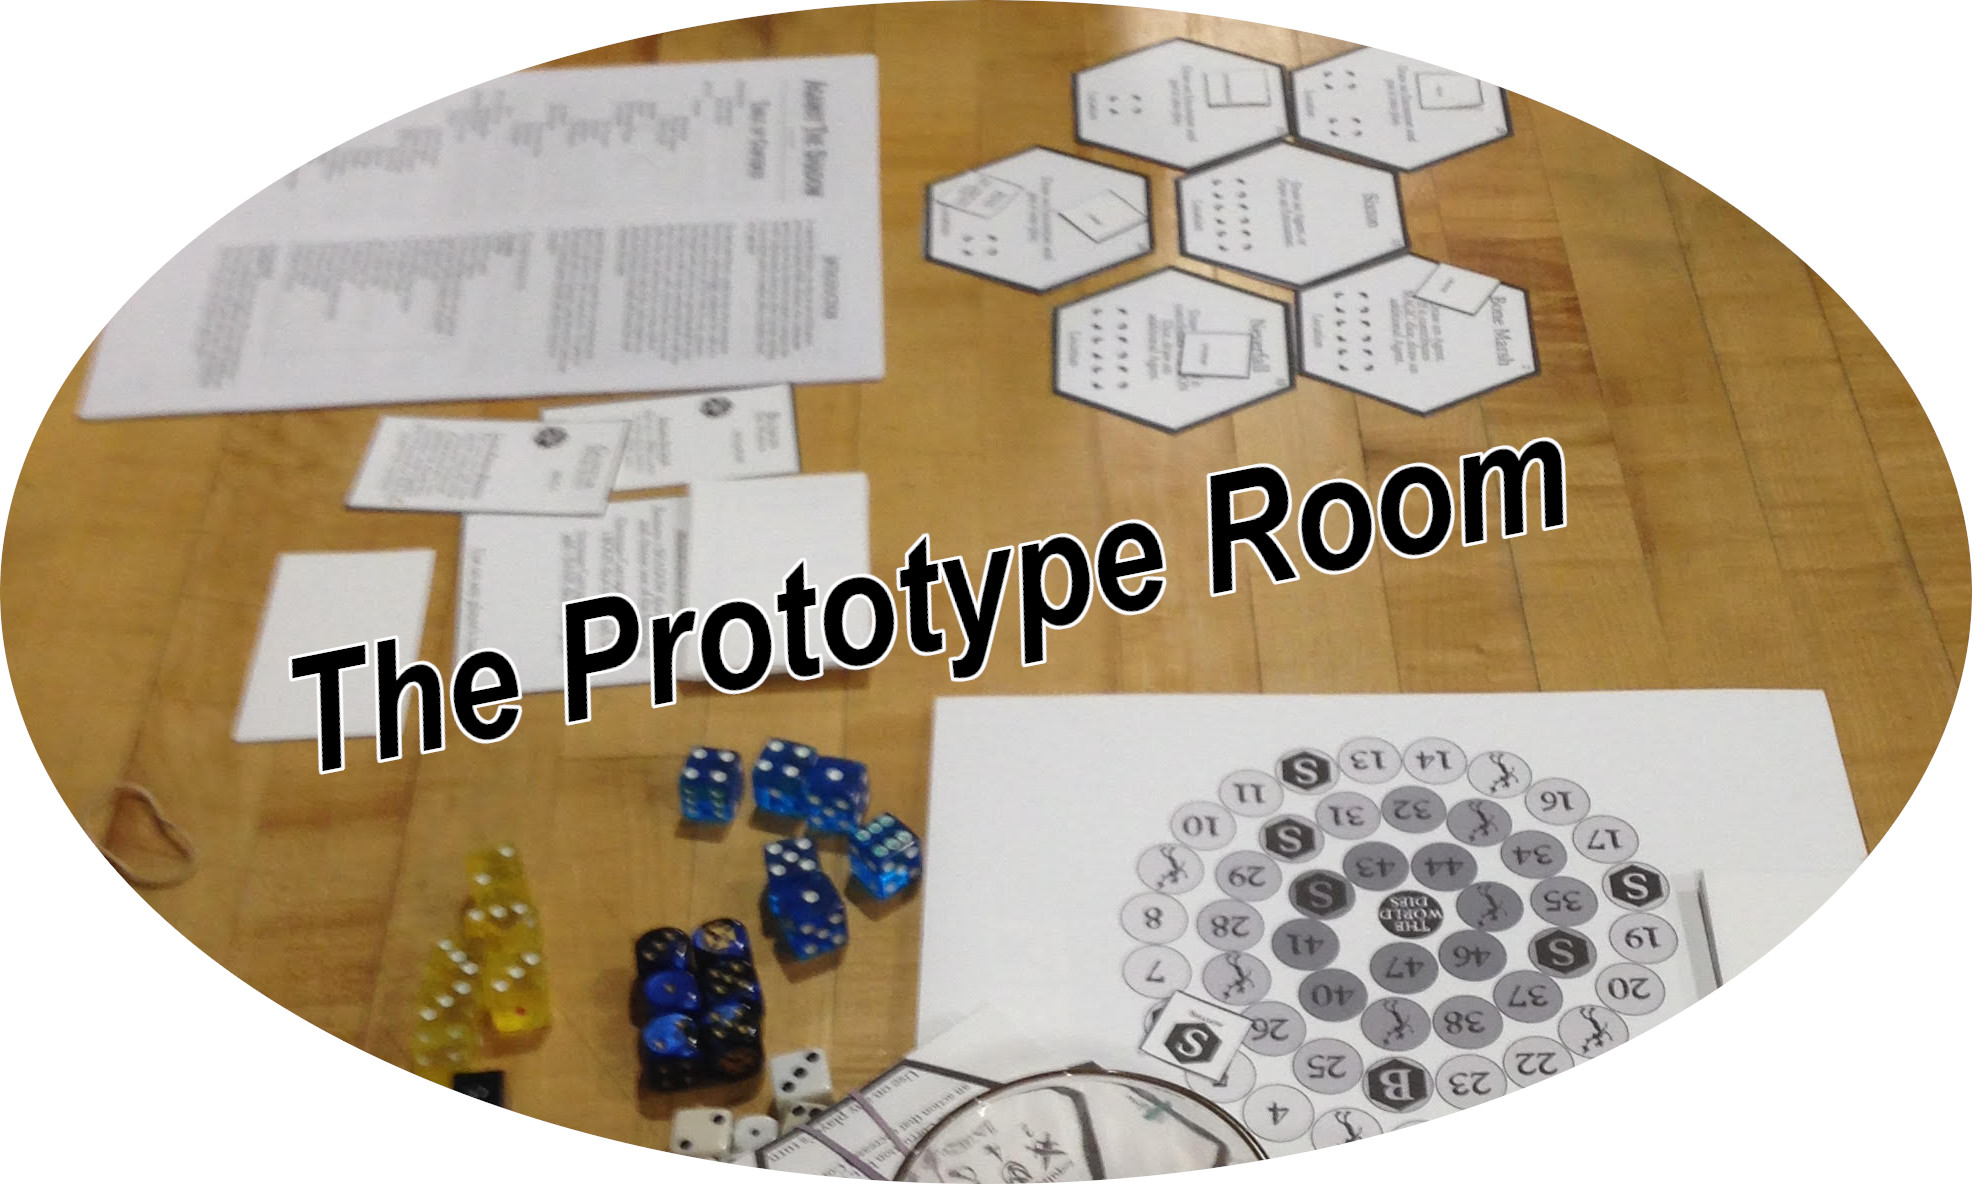 Prototype Room